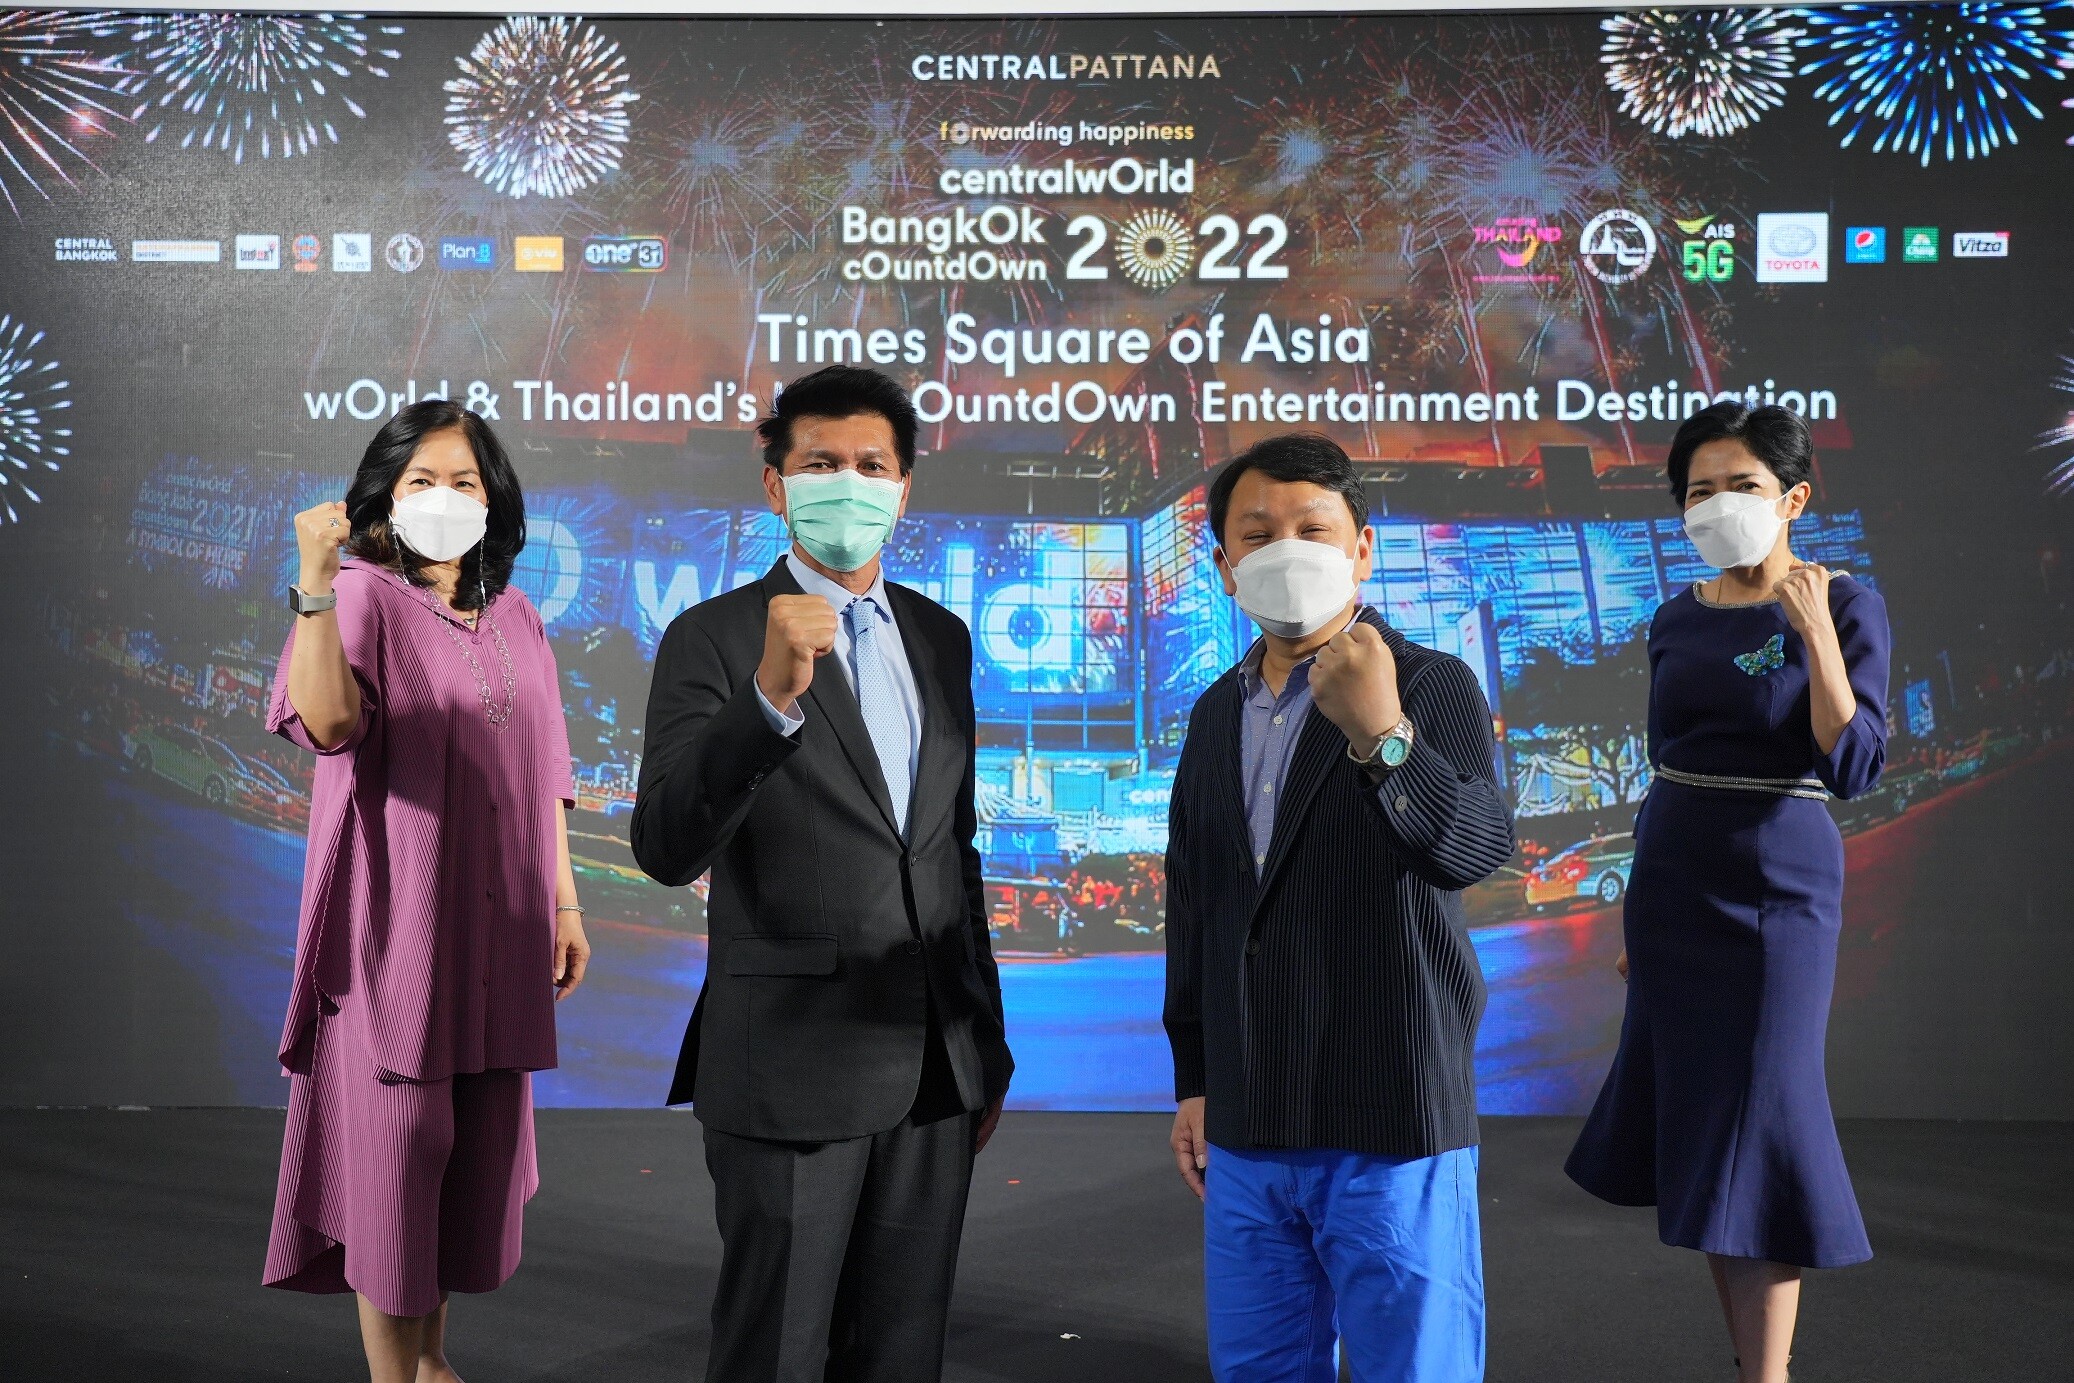 กระหึ่มระดับโลก เซ็นทรัลเวิลด์ Times Square of Asia ทุ่มงบ 100 ล้าน เตรียมฉลองเอ็นเตอร์เทนเมนต์เคาท์ดาวน์ที่ดีที่สุดตลอดกาลของไทย ในงาน "centralwOrld bangkOk cOuntdOwn 2022" ย้ำคุมเข้ม สะอาด มั่นใจ